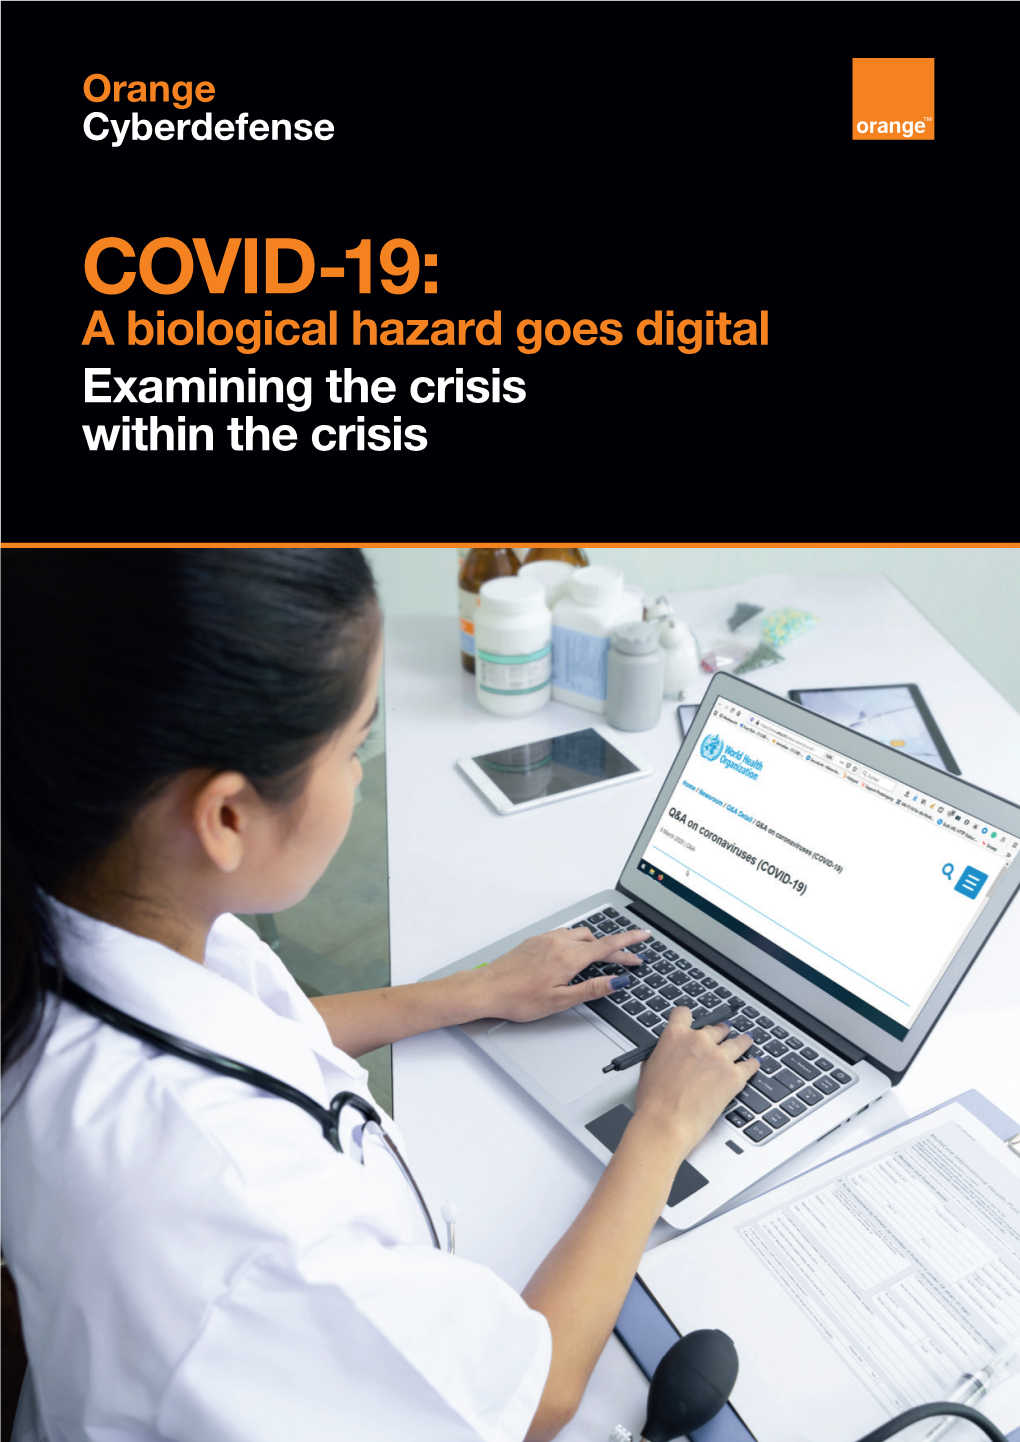 COVID-19: a Biological Hazard Goes Digital Examining the Crisis Within the Crisis 2 COVID-19: a Biological Hazard Goes Digital Table of Contents 3